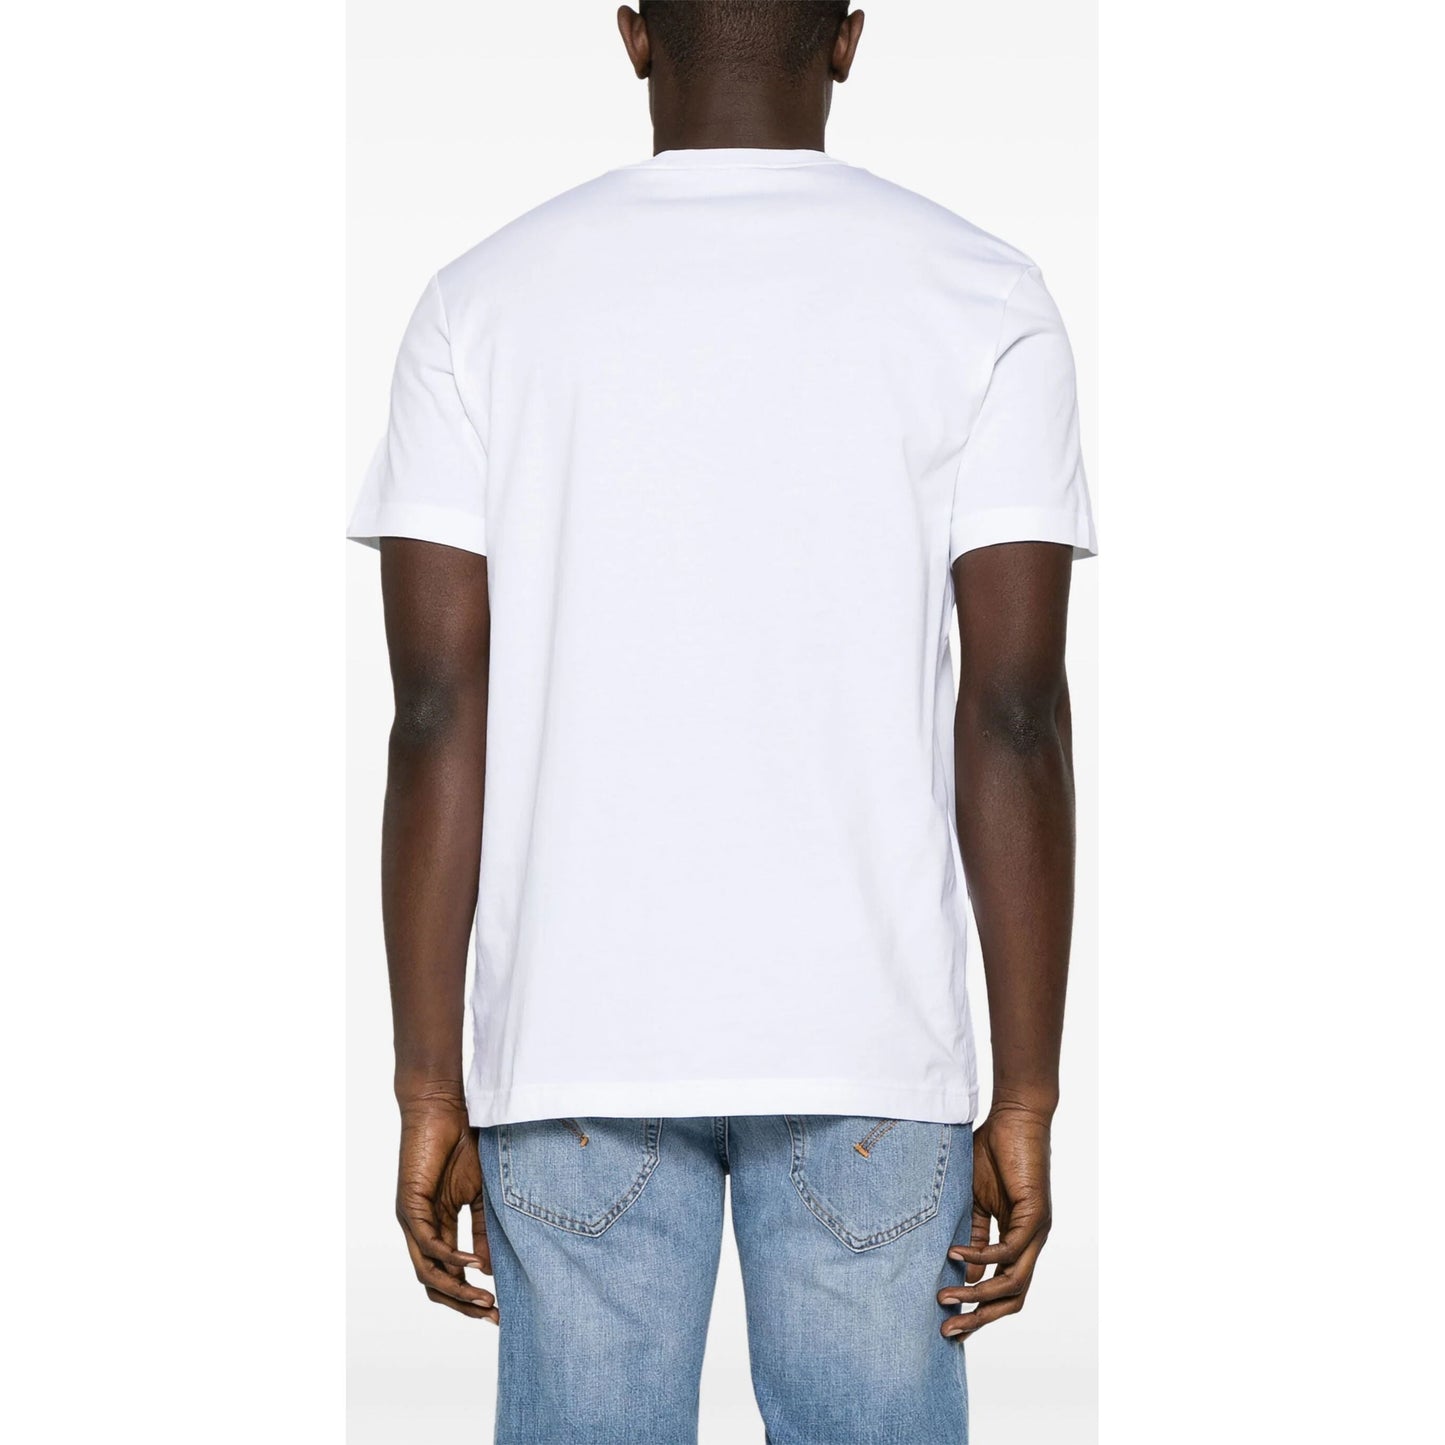 CALVIN KLEIN JEANS marškinėliai trumpomis rankovėmis vyrams, Balta, S/s t-shirt